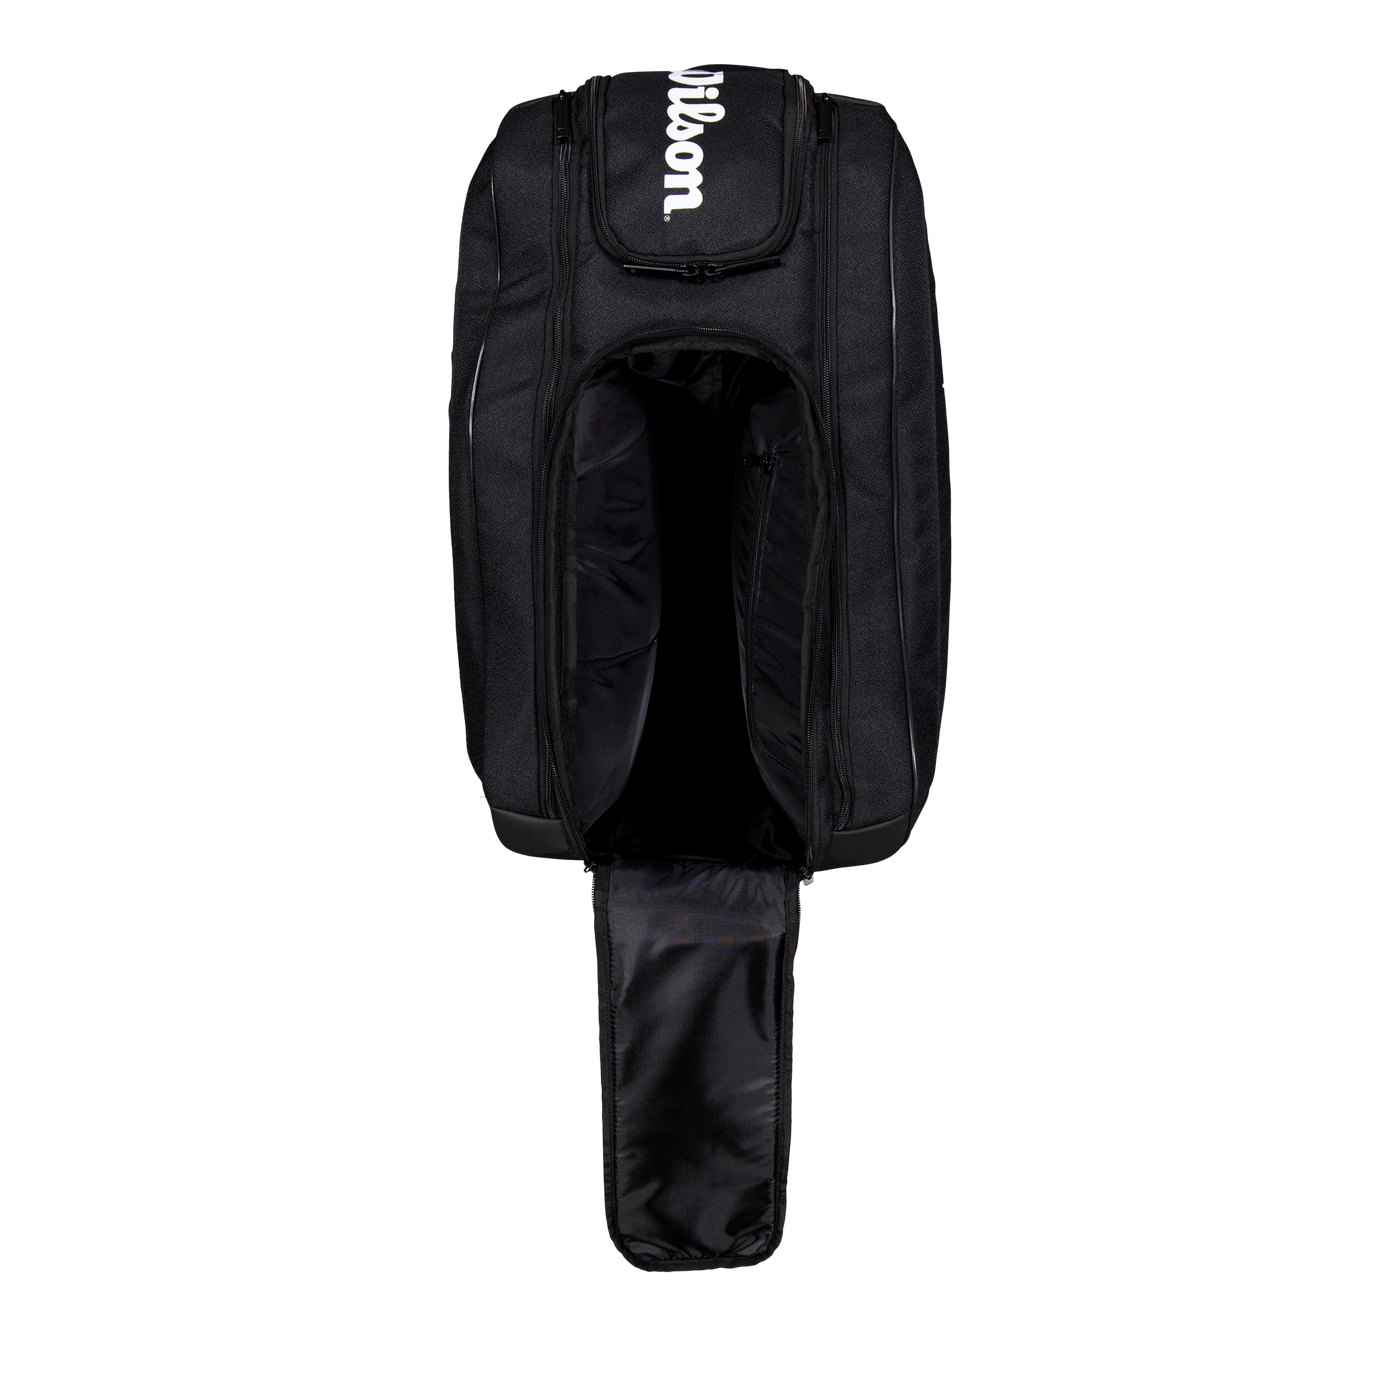 Bela Super Tour Padel Bag Black